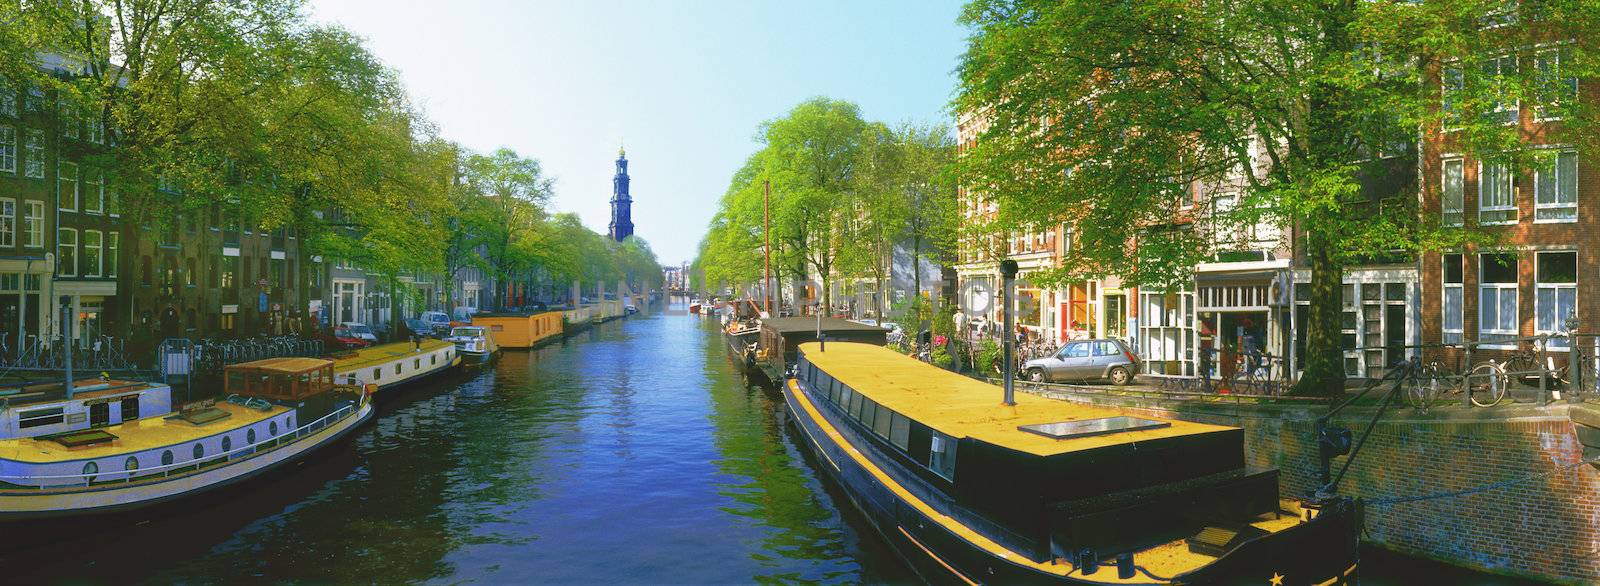 Netherlands Amsterdam boats along Pinsengracht Canal Jordan Area near Westerkerk Church